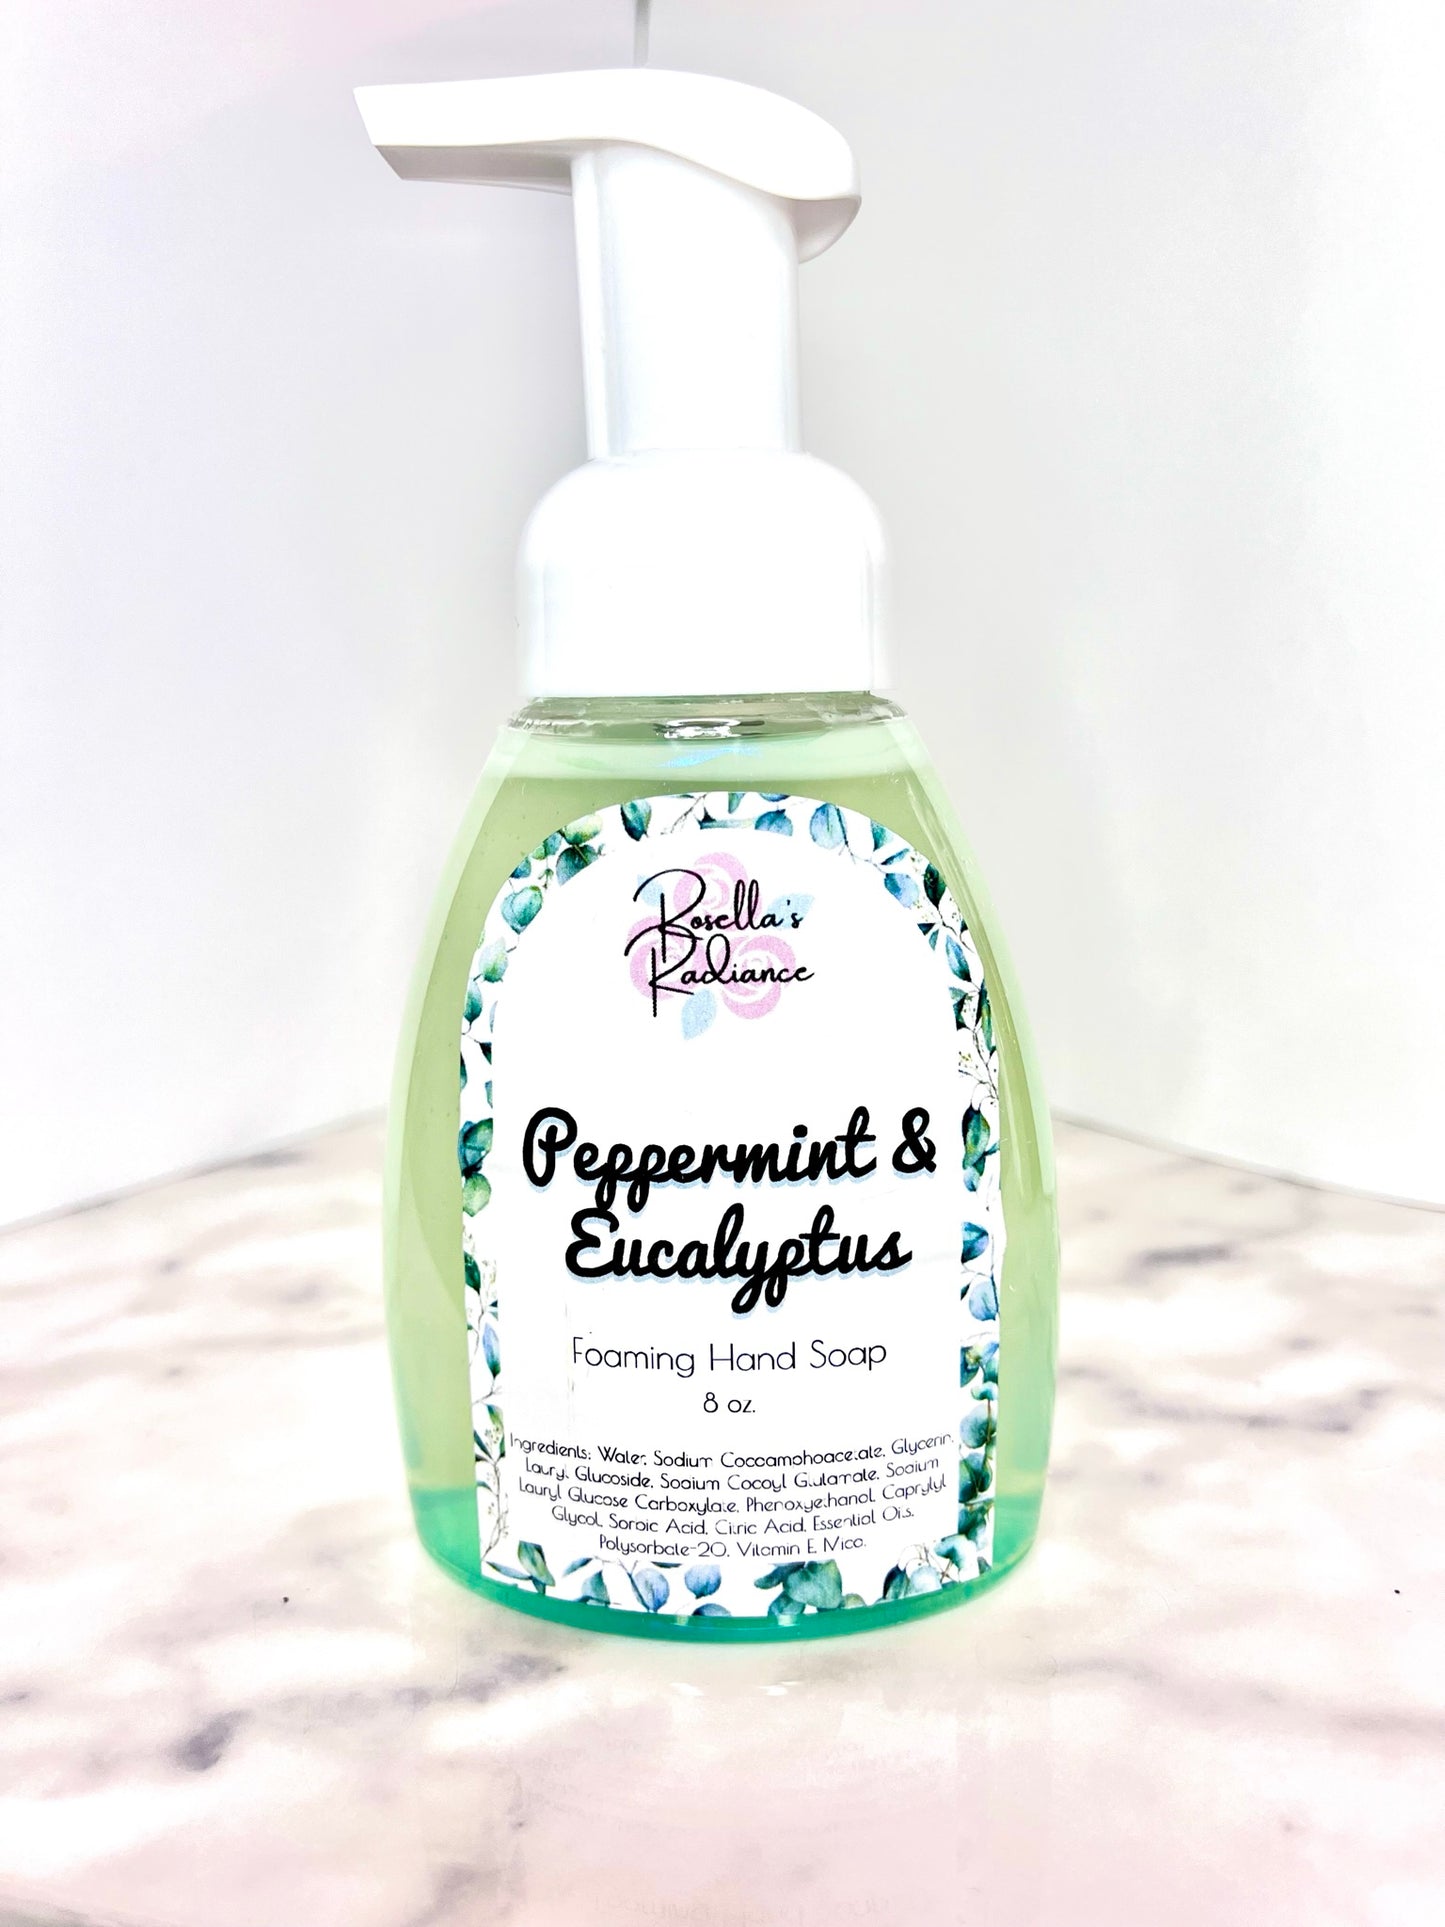 Peppermint & Eucalyptus Foaming Hand Soap